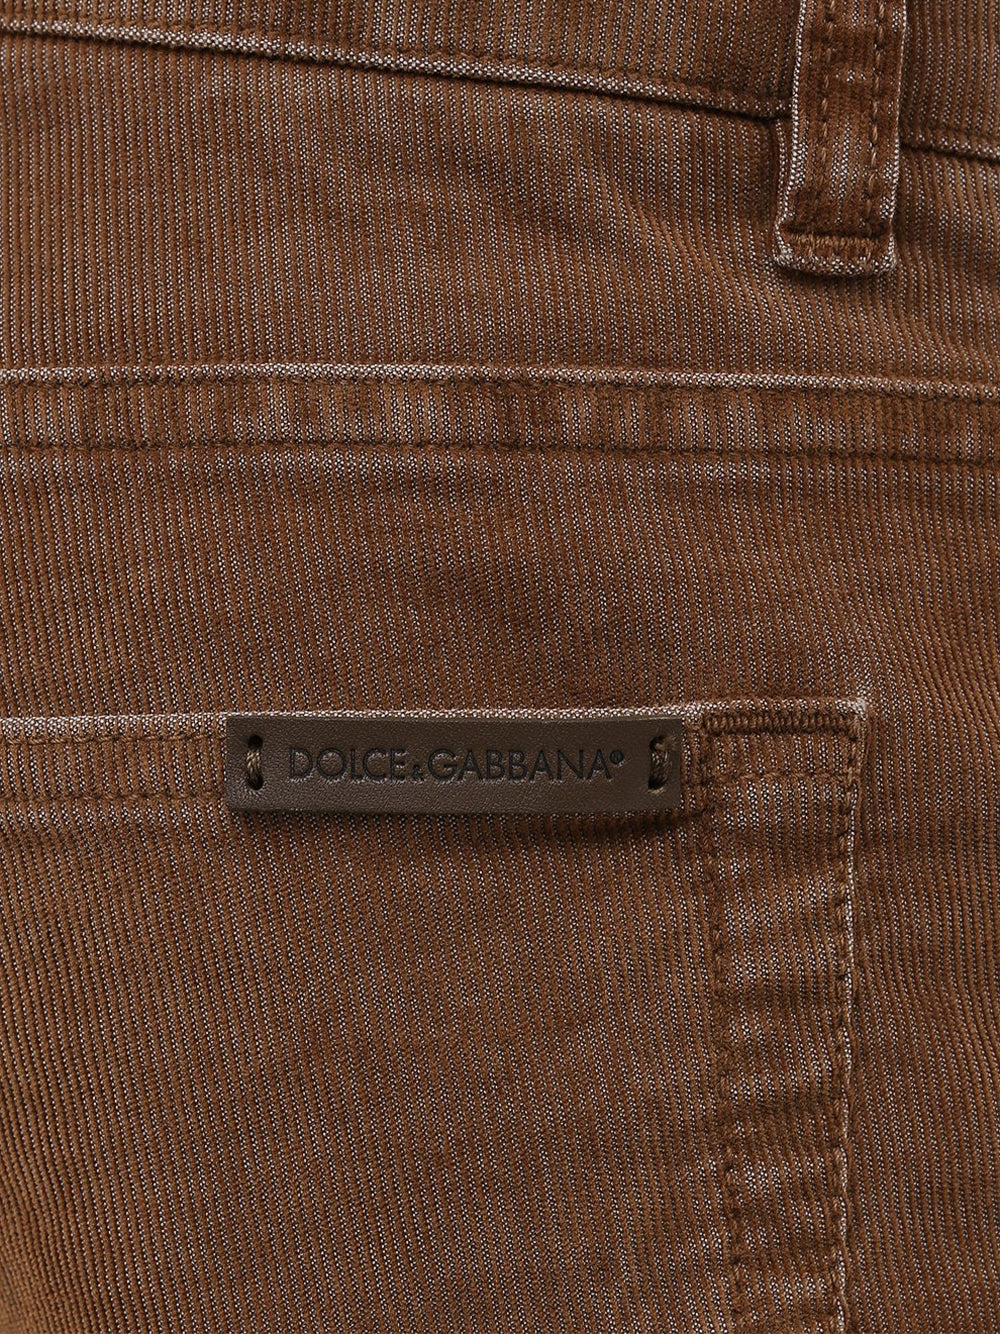 Dolce & Gabbana Corduroy Skinny Jeans